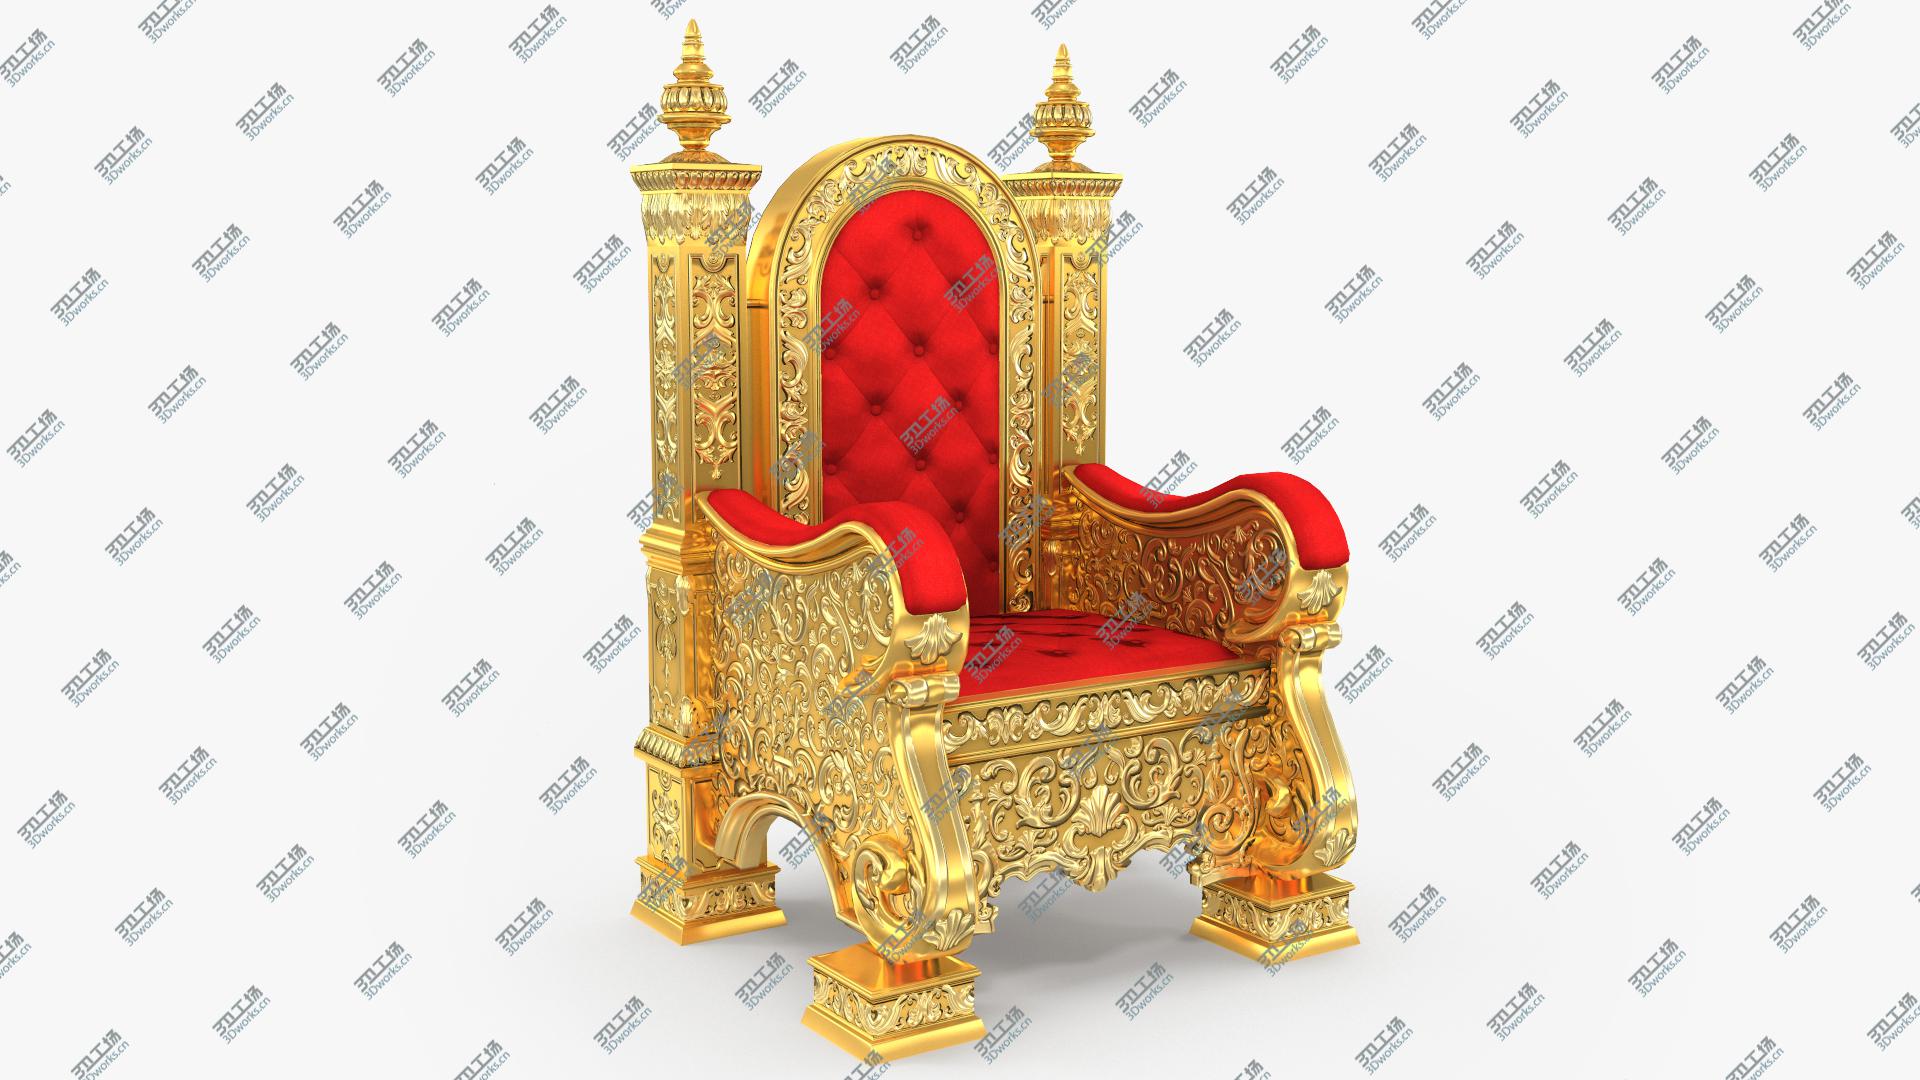 images/goods_img/2021040162/3D Kings Throne Chair model/1.jpg